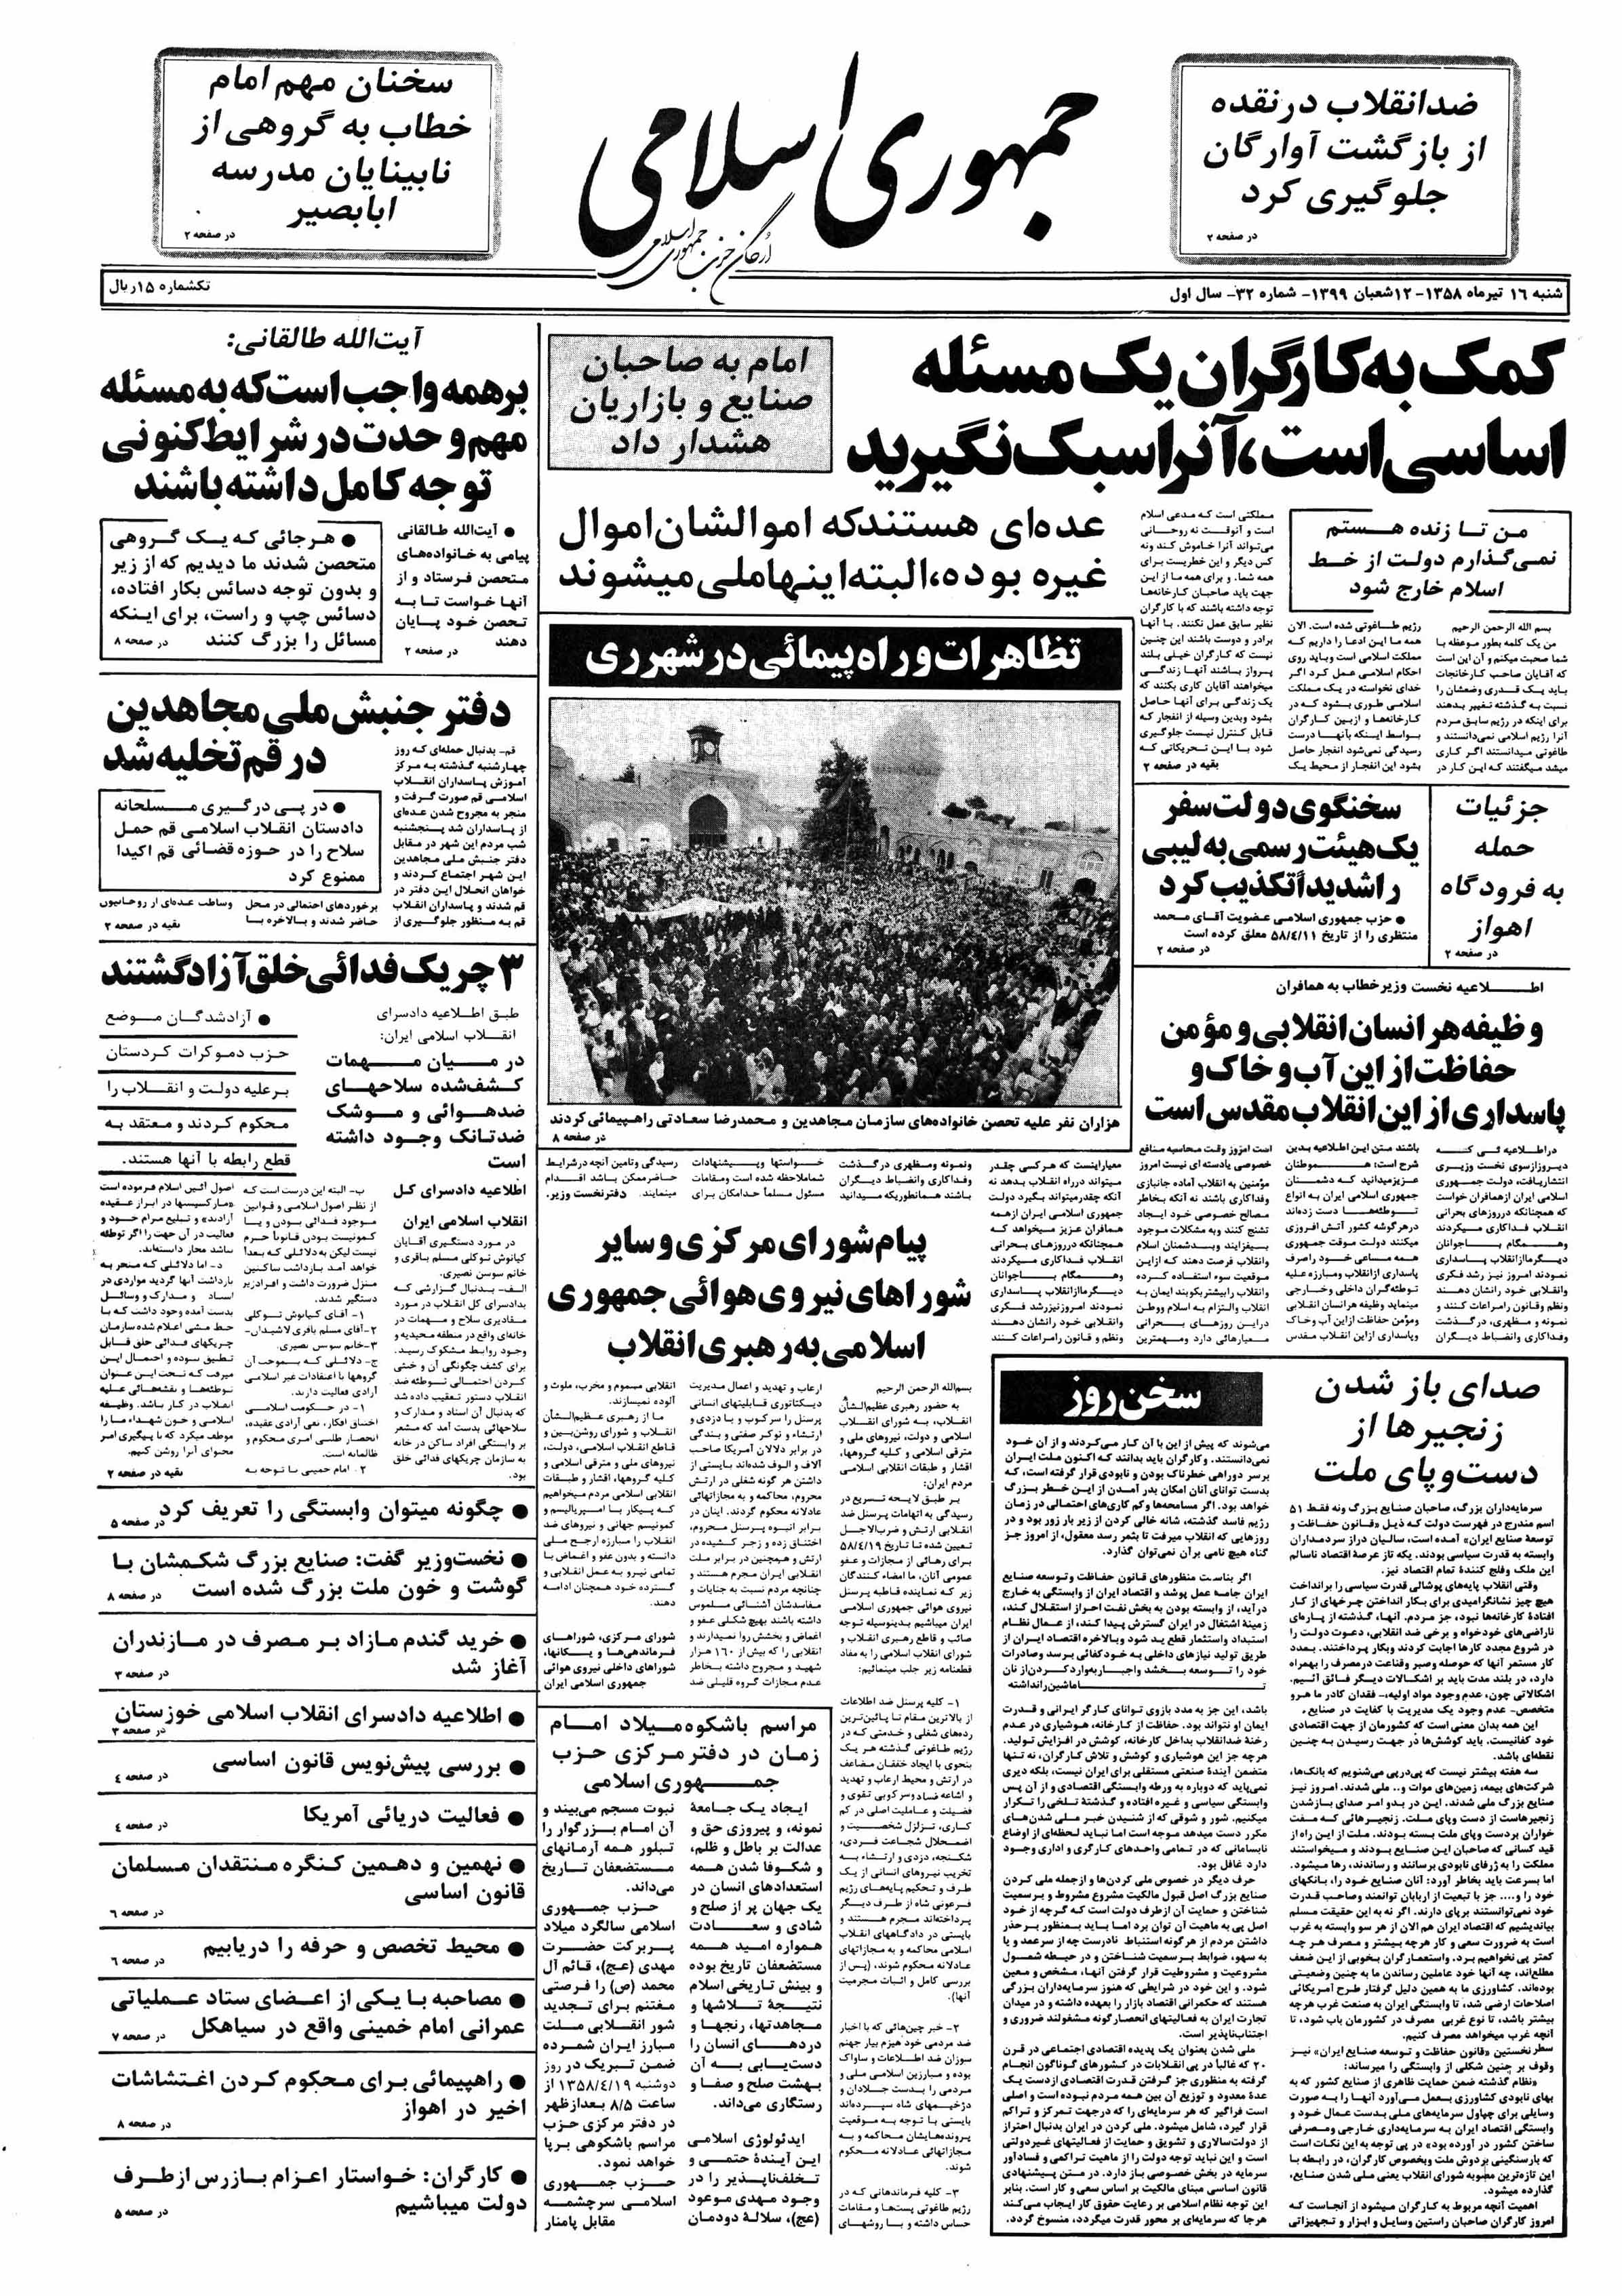 تصویر روزنامه جمهوری اسلامی ۱6 تیر ۱۳۵۸